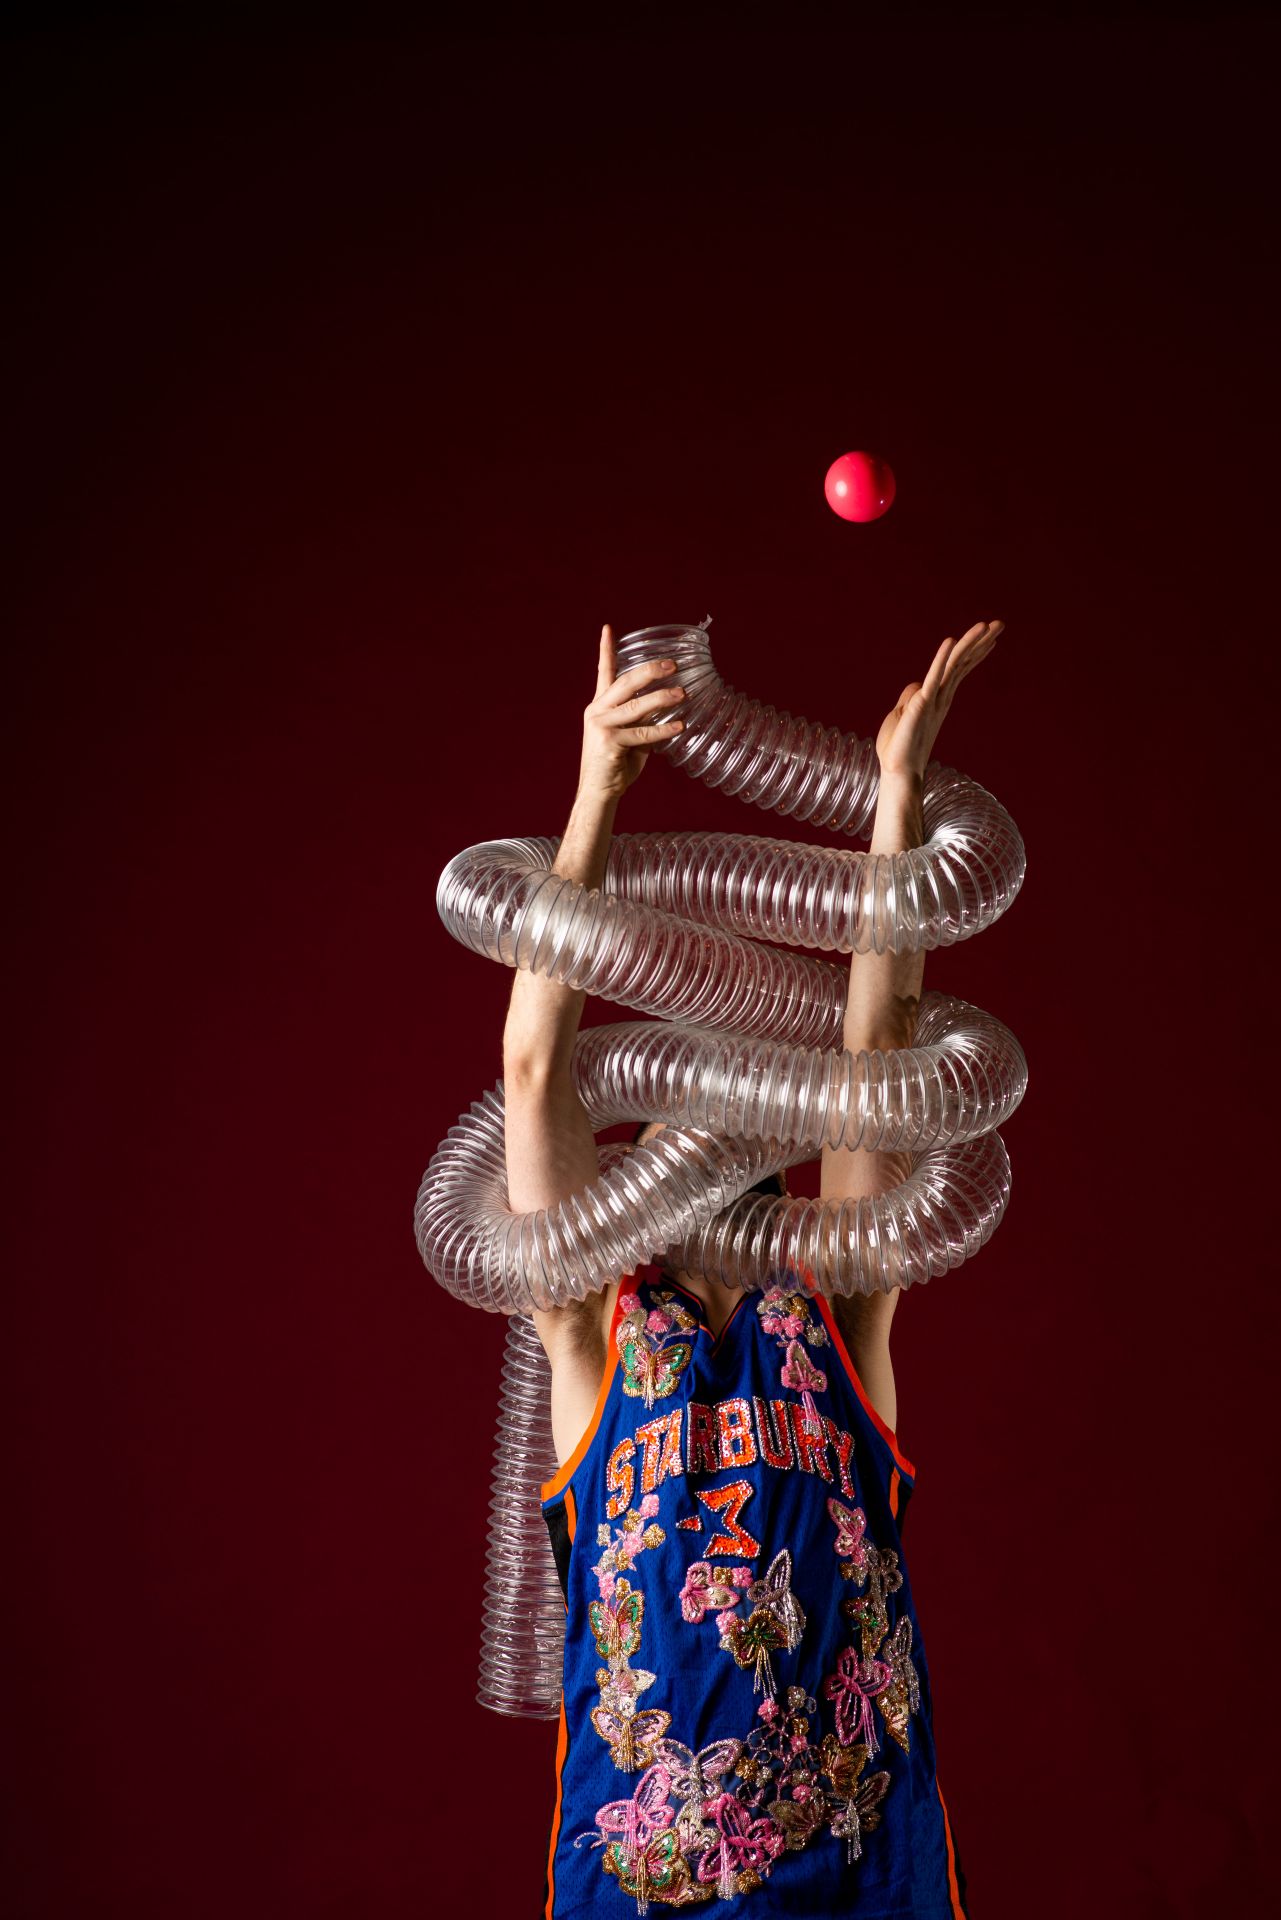 Rīgas cirks piedāvā: žonglēšanas izrāde 